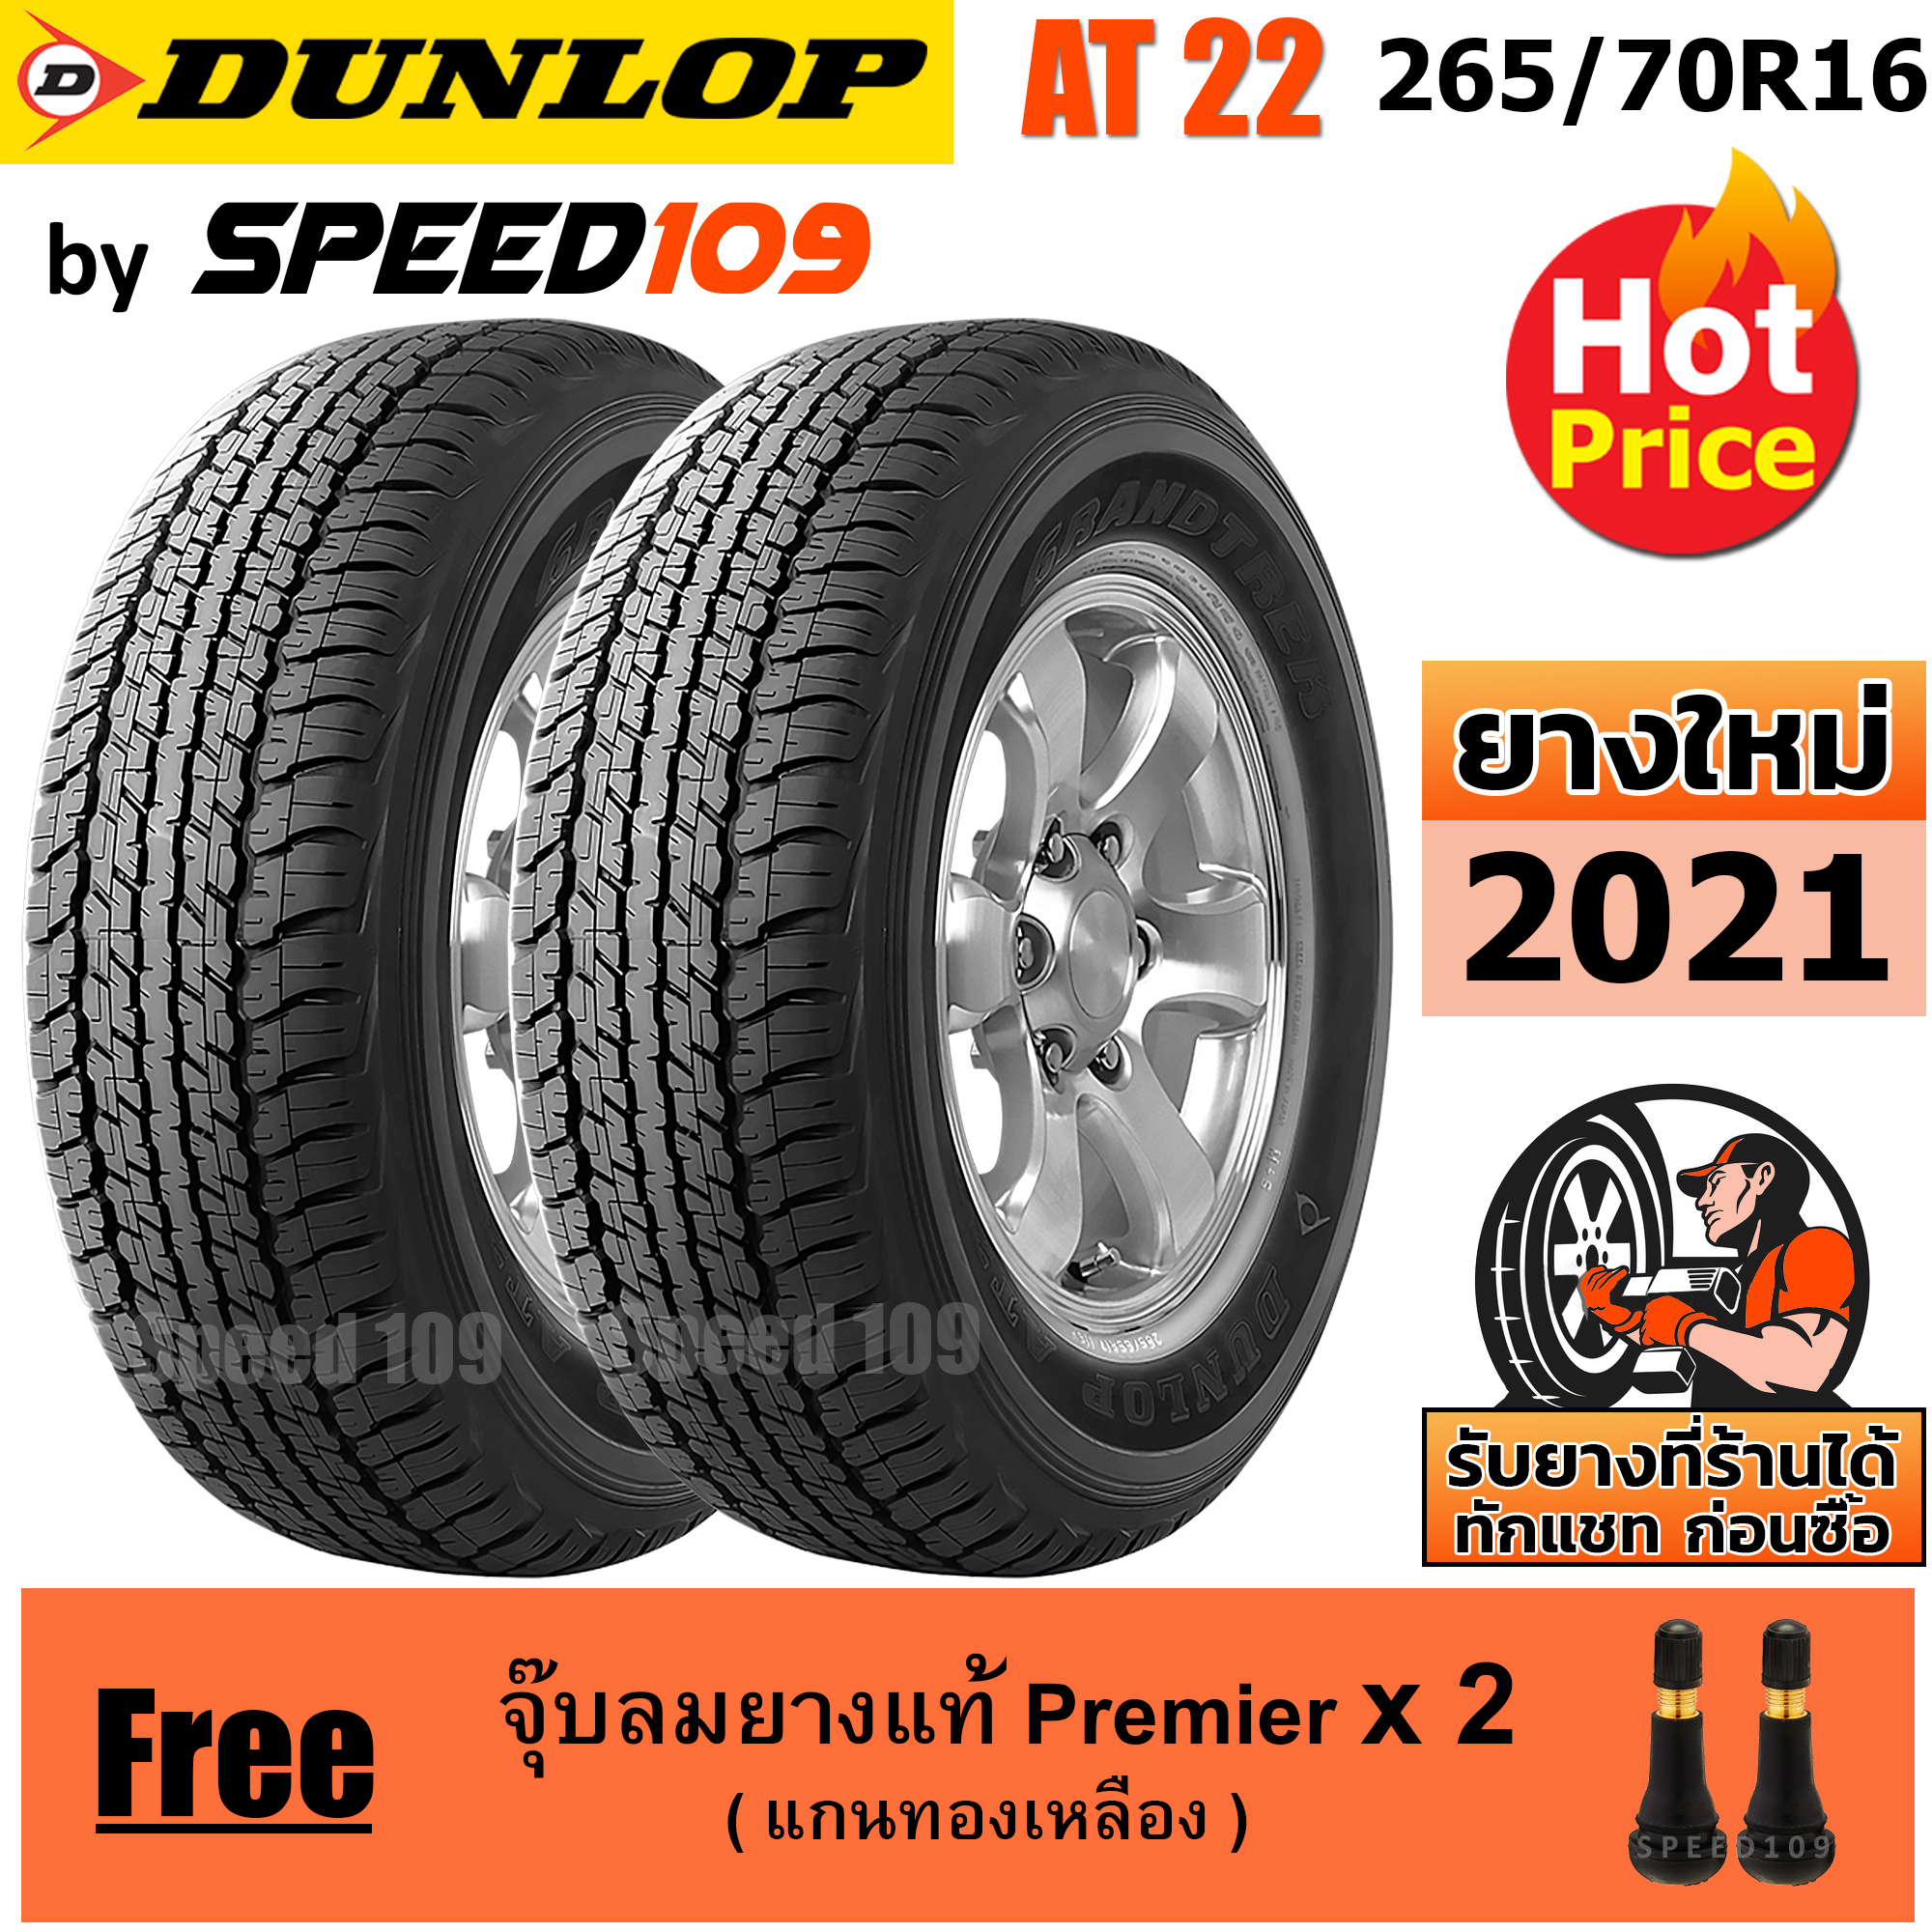 DUNLOP ยางรถยนต์ ขอบ 16 ขนาด 265/70R16 รุ่น Grandtrek AT22 - 2 เส้น (ปี 2021)